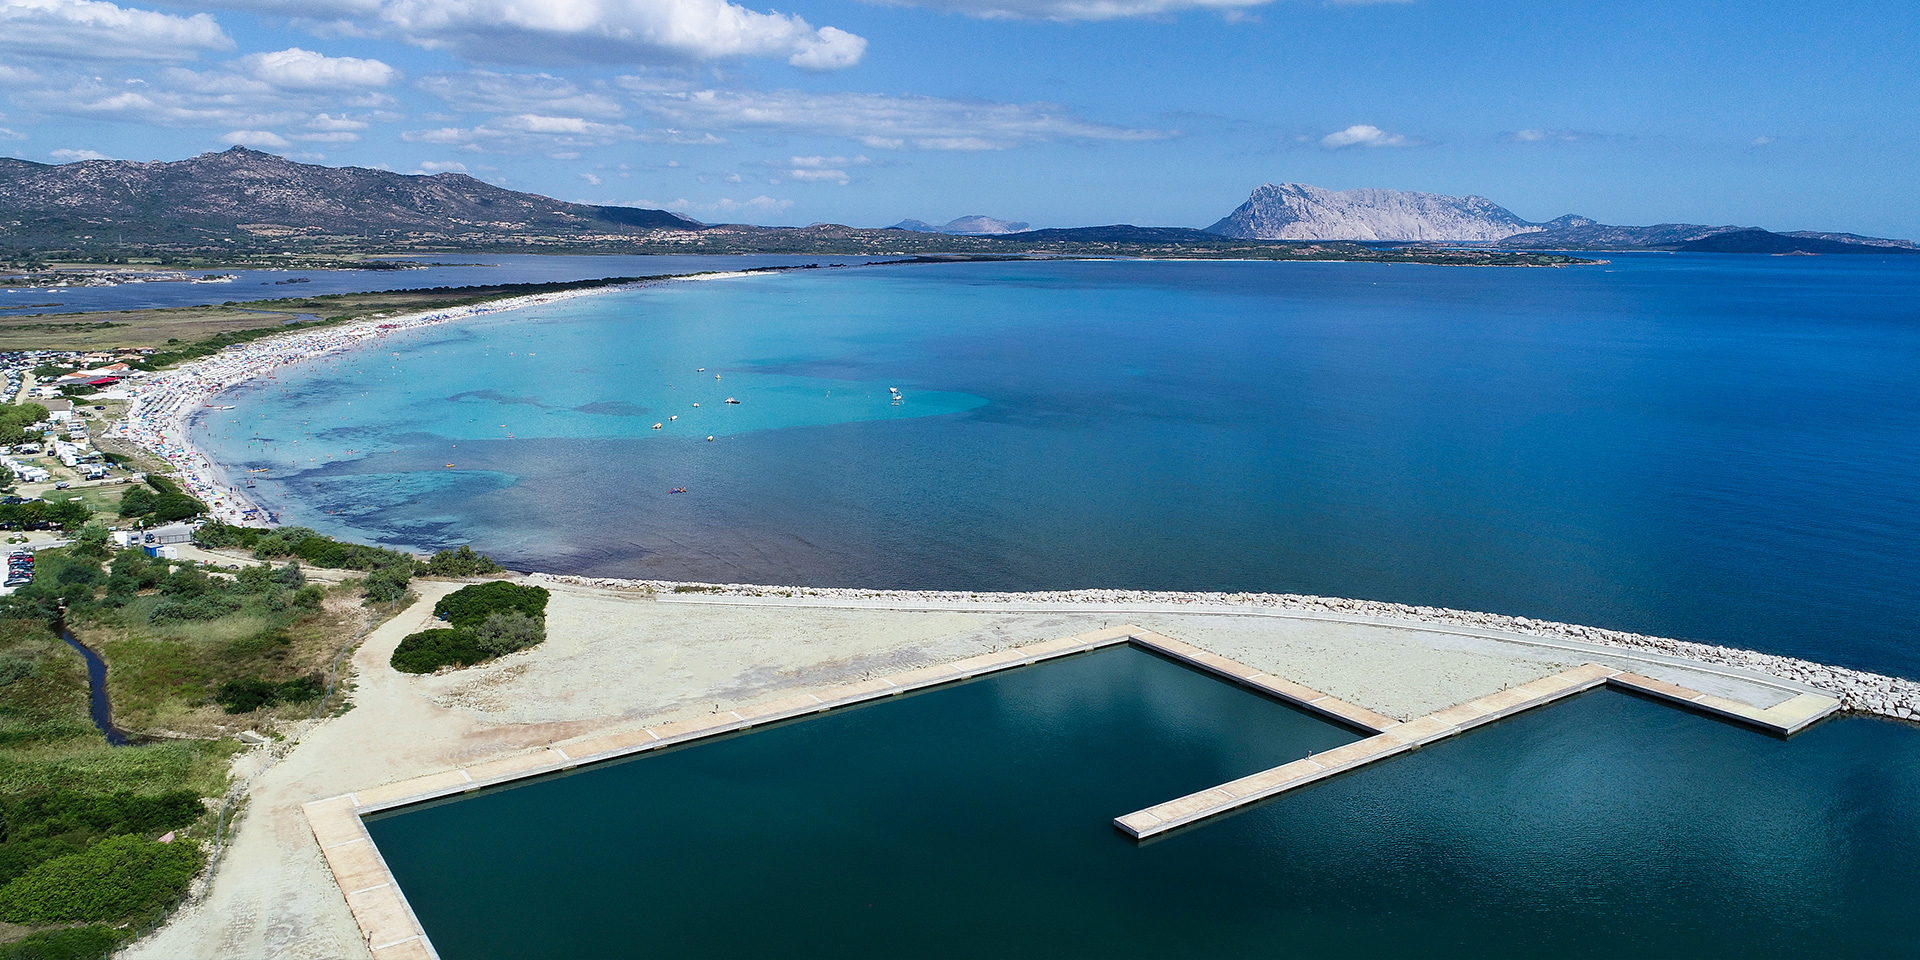 Porto di San Teodoro in Sardegna, Binini Partners, Società di architettura e ingegneria